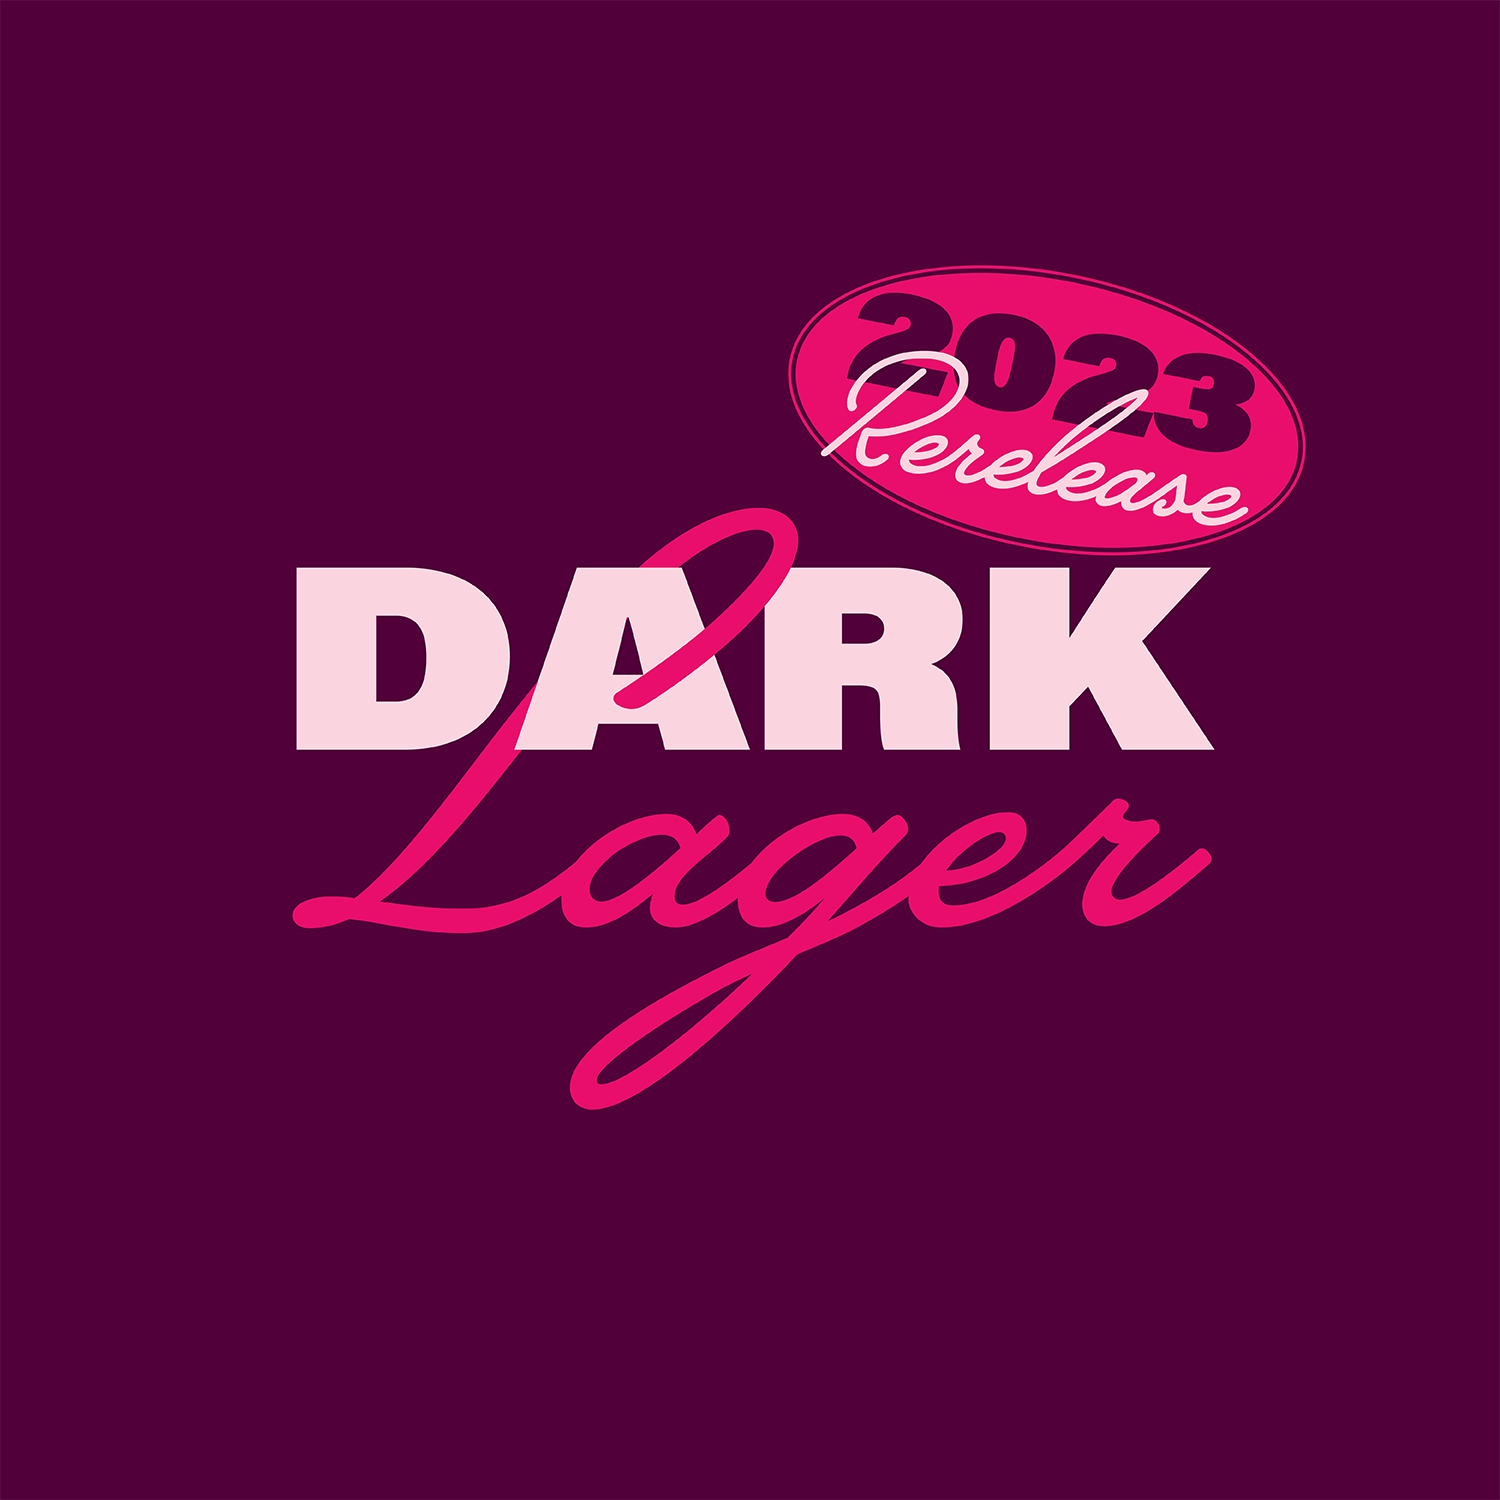 DarkLager_WebTile